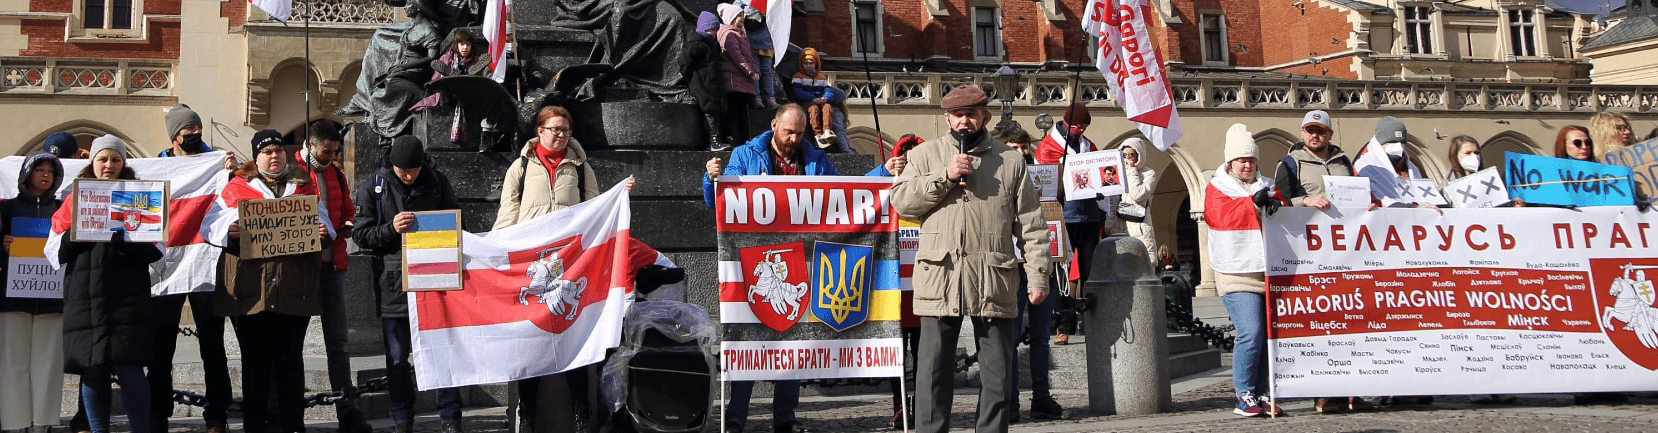 Война или спецоперация? Что на самом деле происходитьв Украине